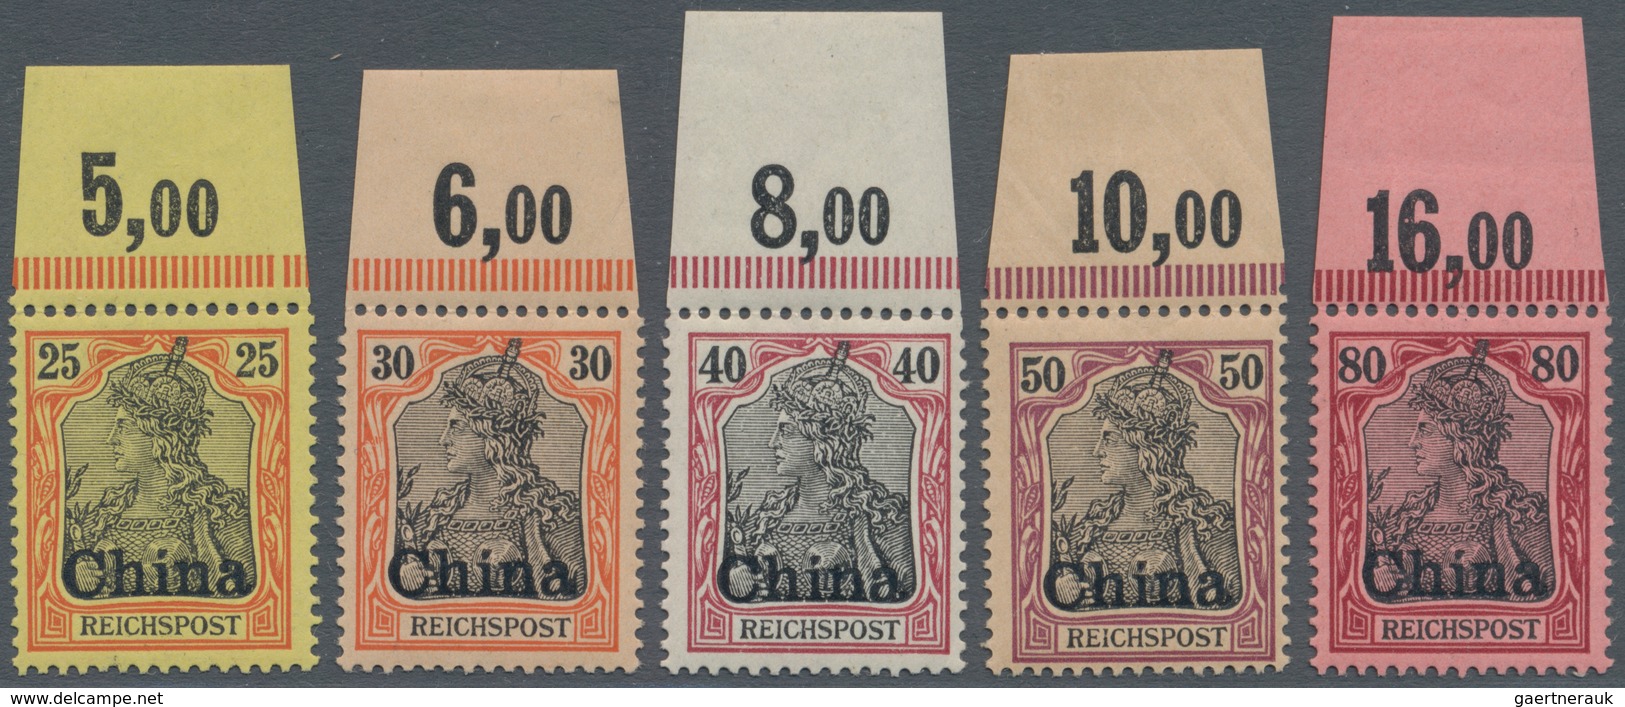 Deutsche Post In China: 1901. 3 Pfg Braun Bis 5 Mk Grünschwarz/bräunlichkarmin. Die Amtlich Nicht Au - Deutsche Post In China